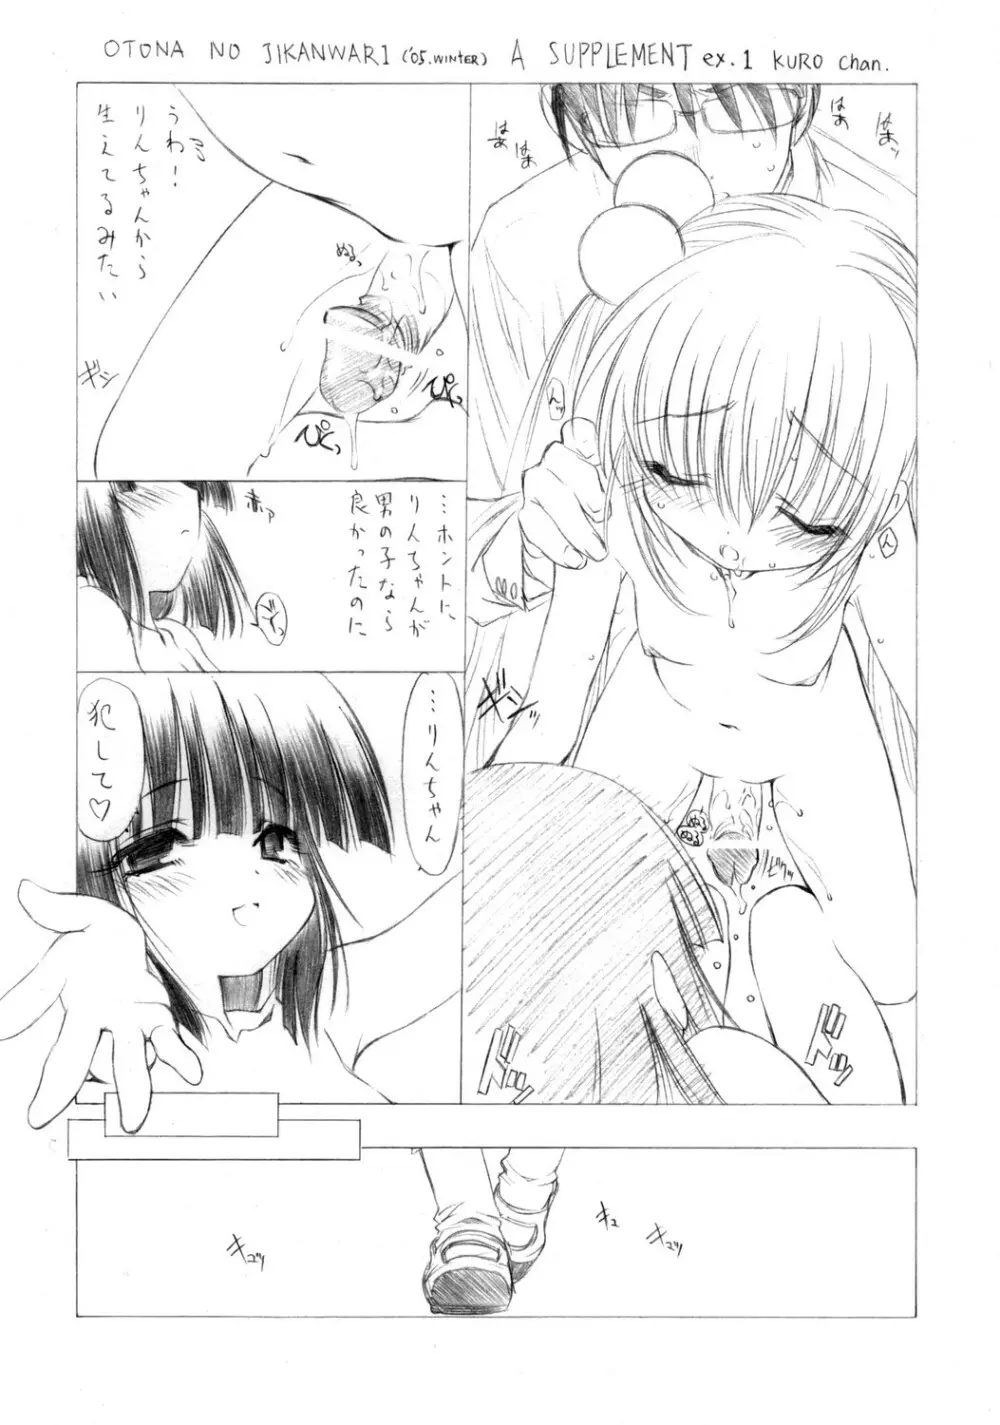 (ぷにケット 13)[UROBOROS] OTONA NO JIKANWARI (’05.winter) A SUPPLEMENT ex.1 KURO chan (こどものじかん) 1ページ